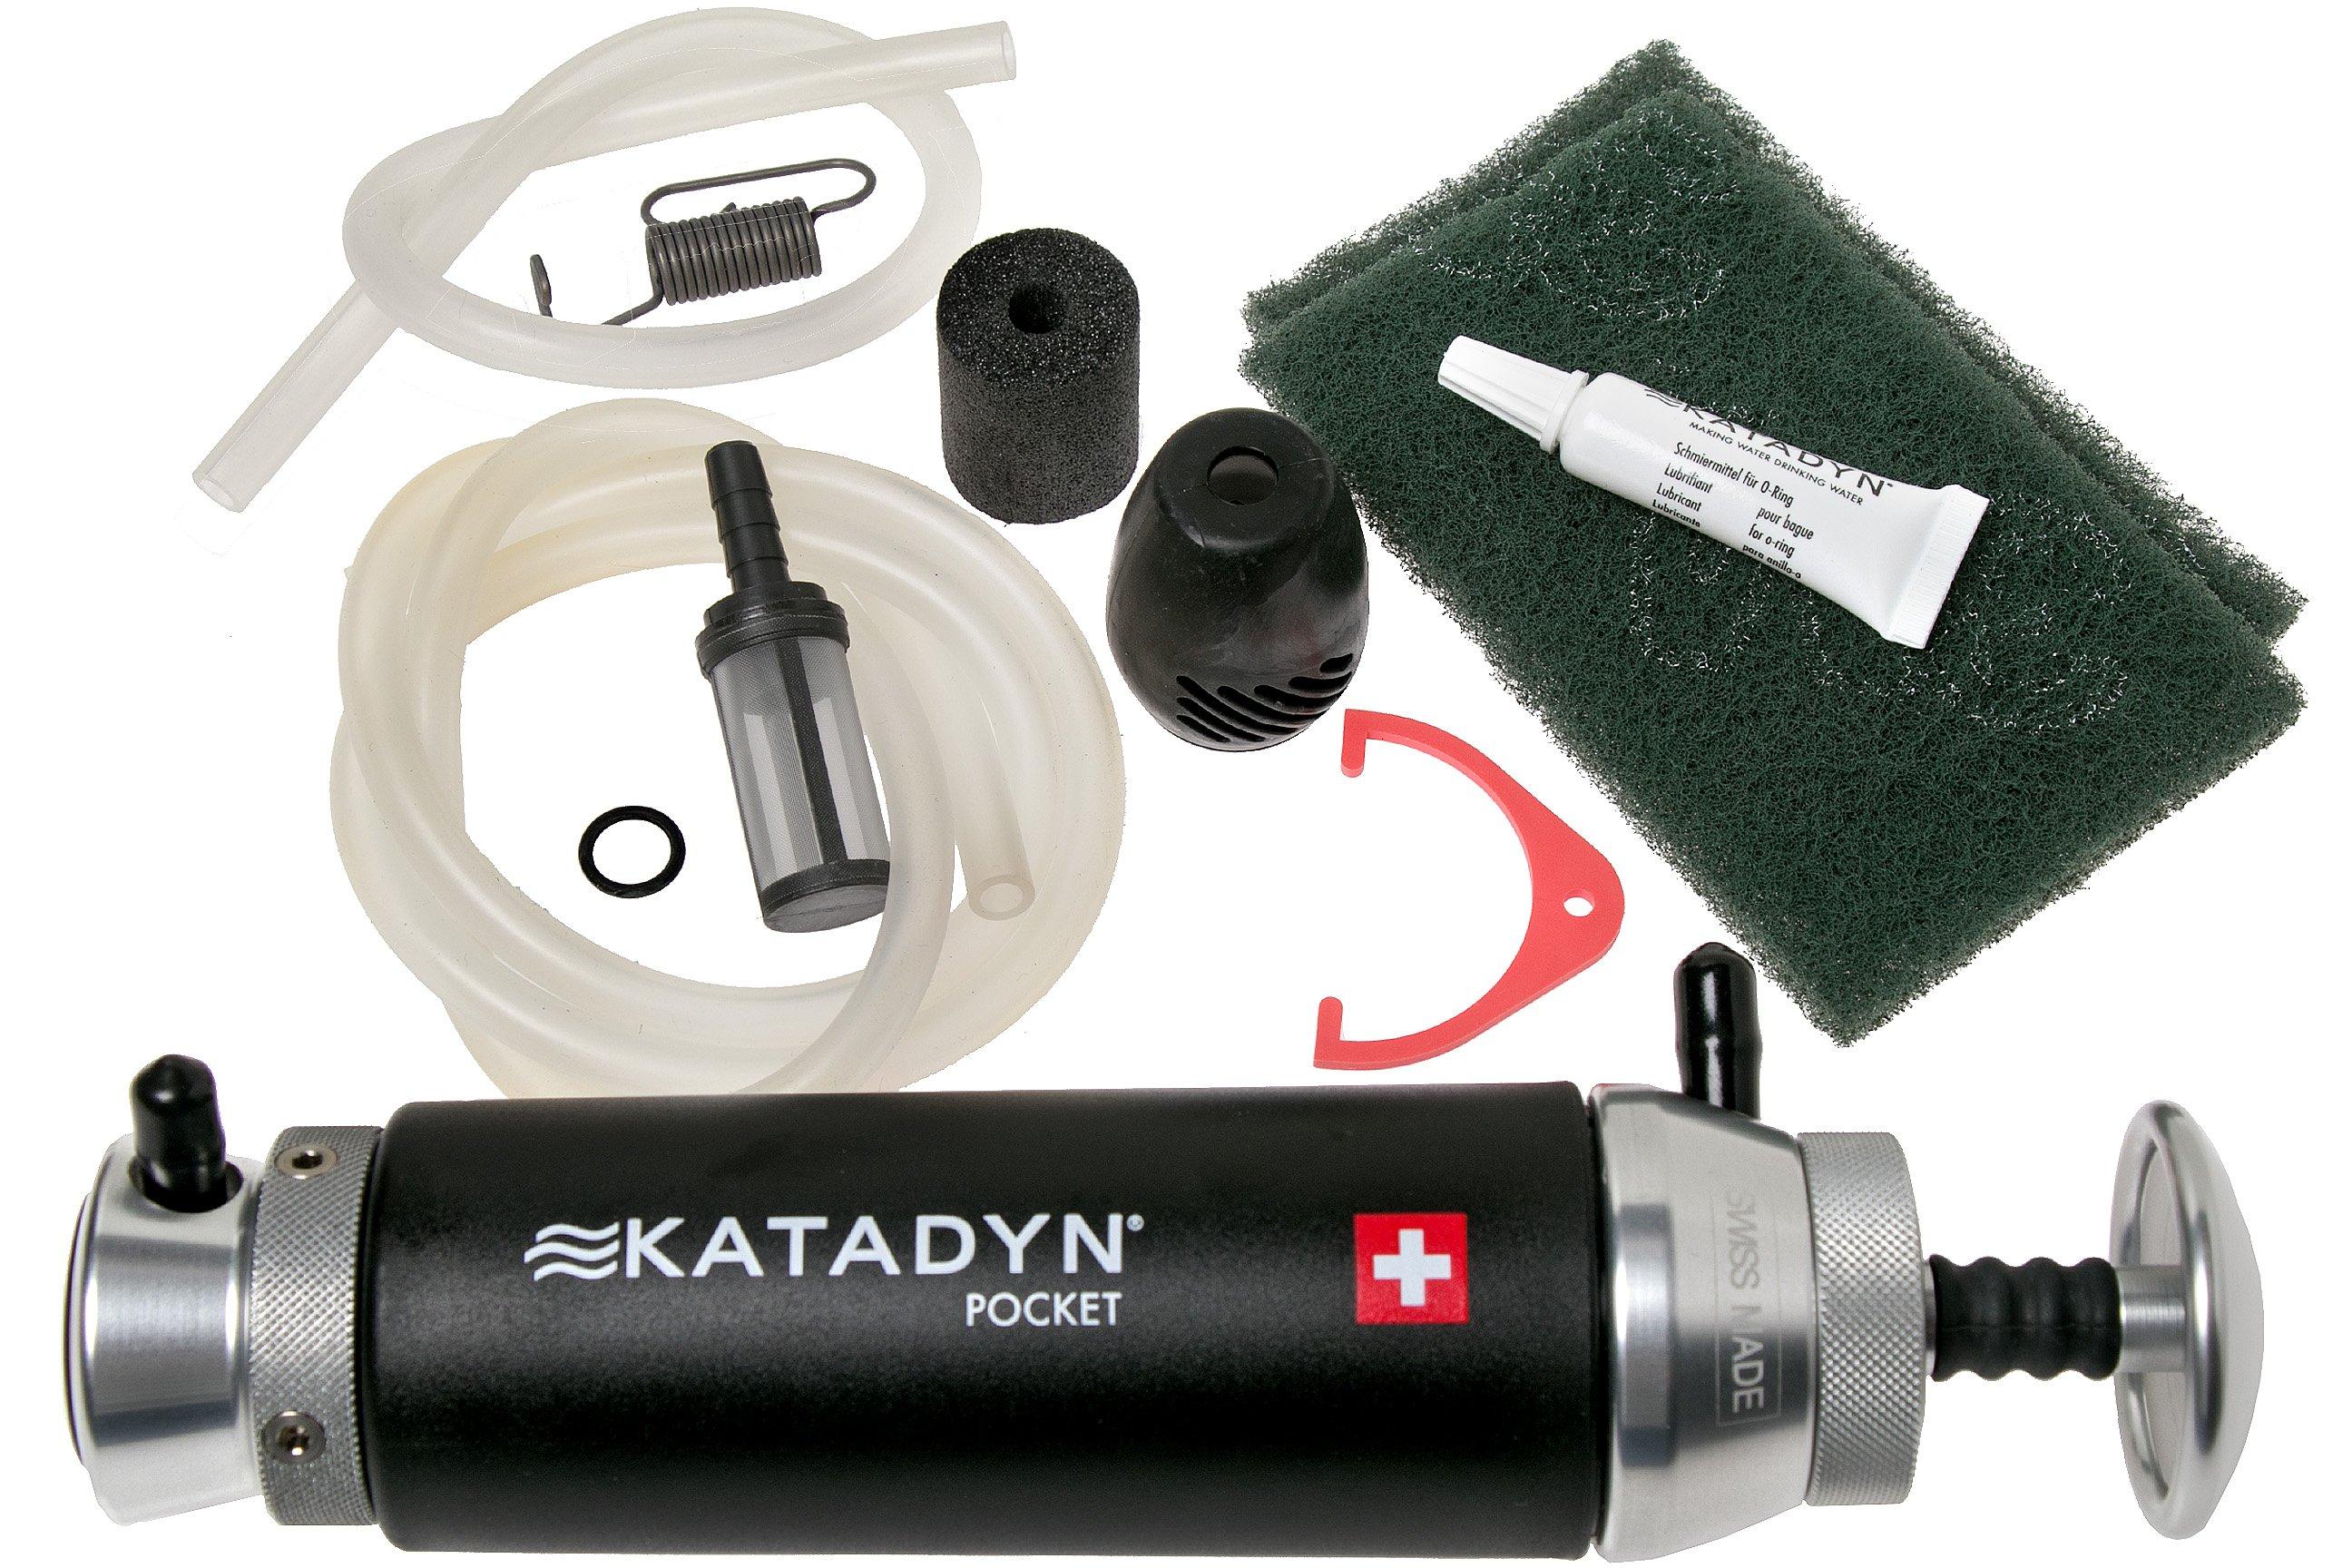 Katadyn Pocket water filter black Advantageously shopping at 